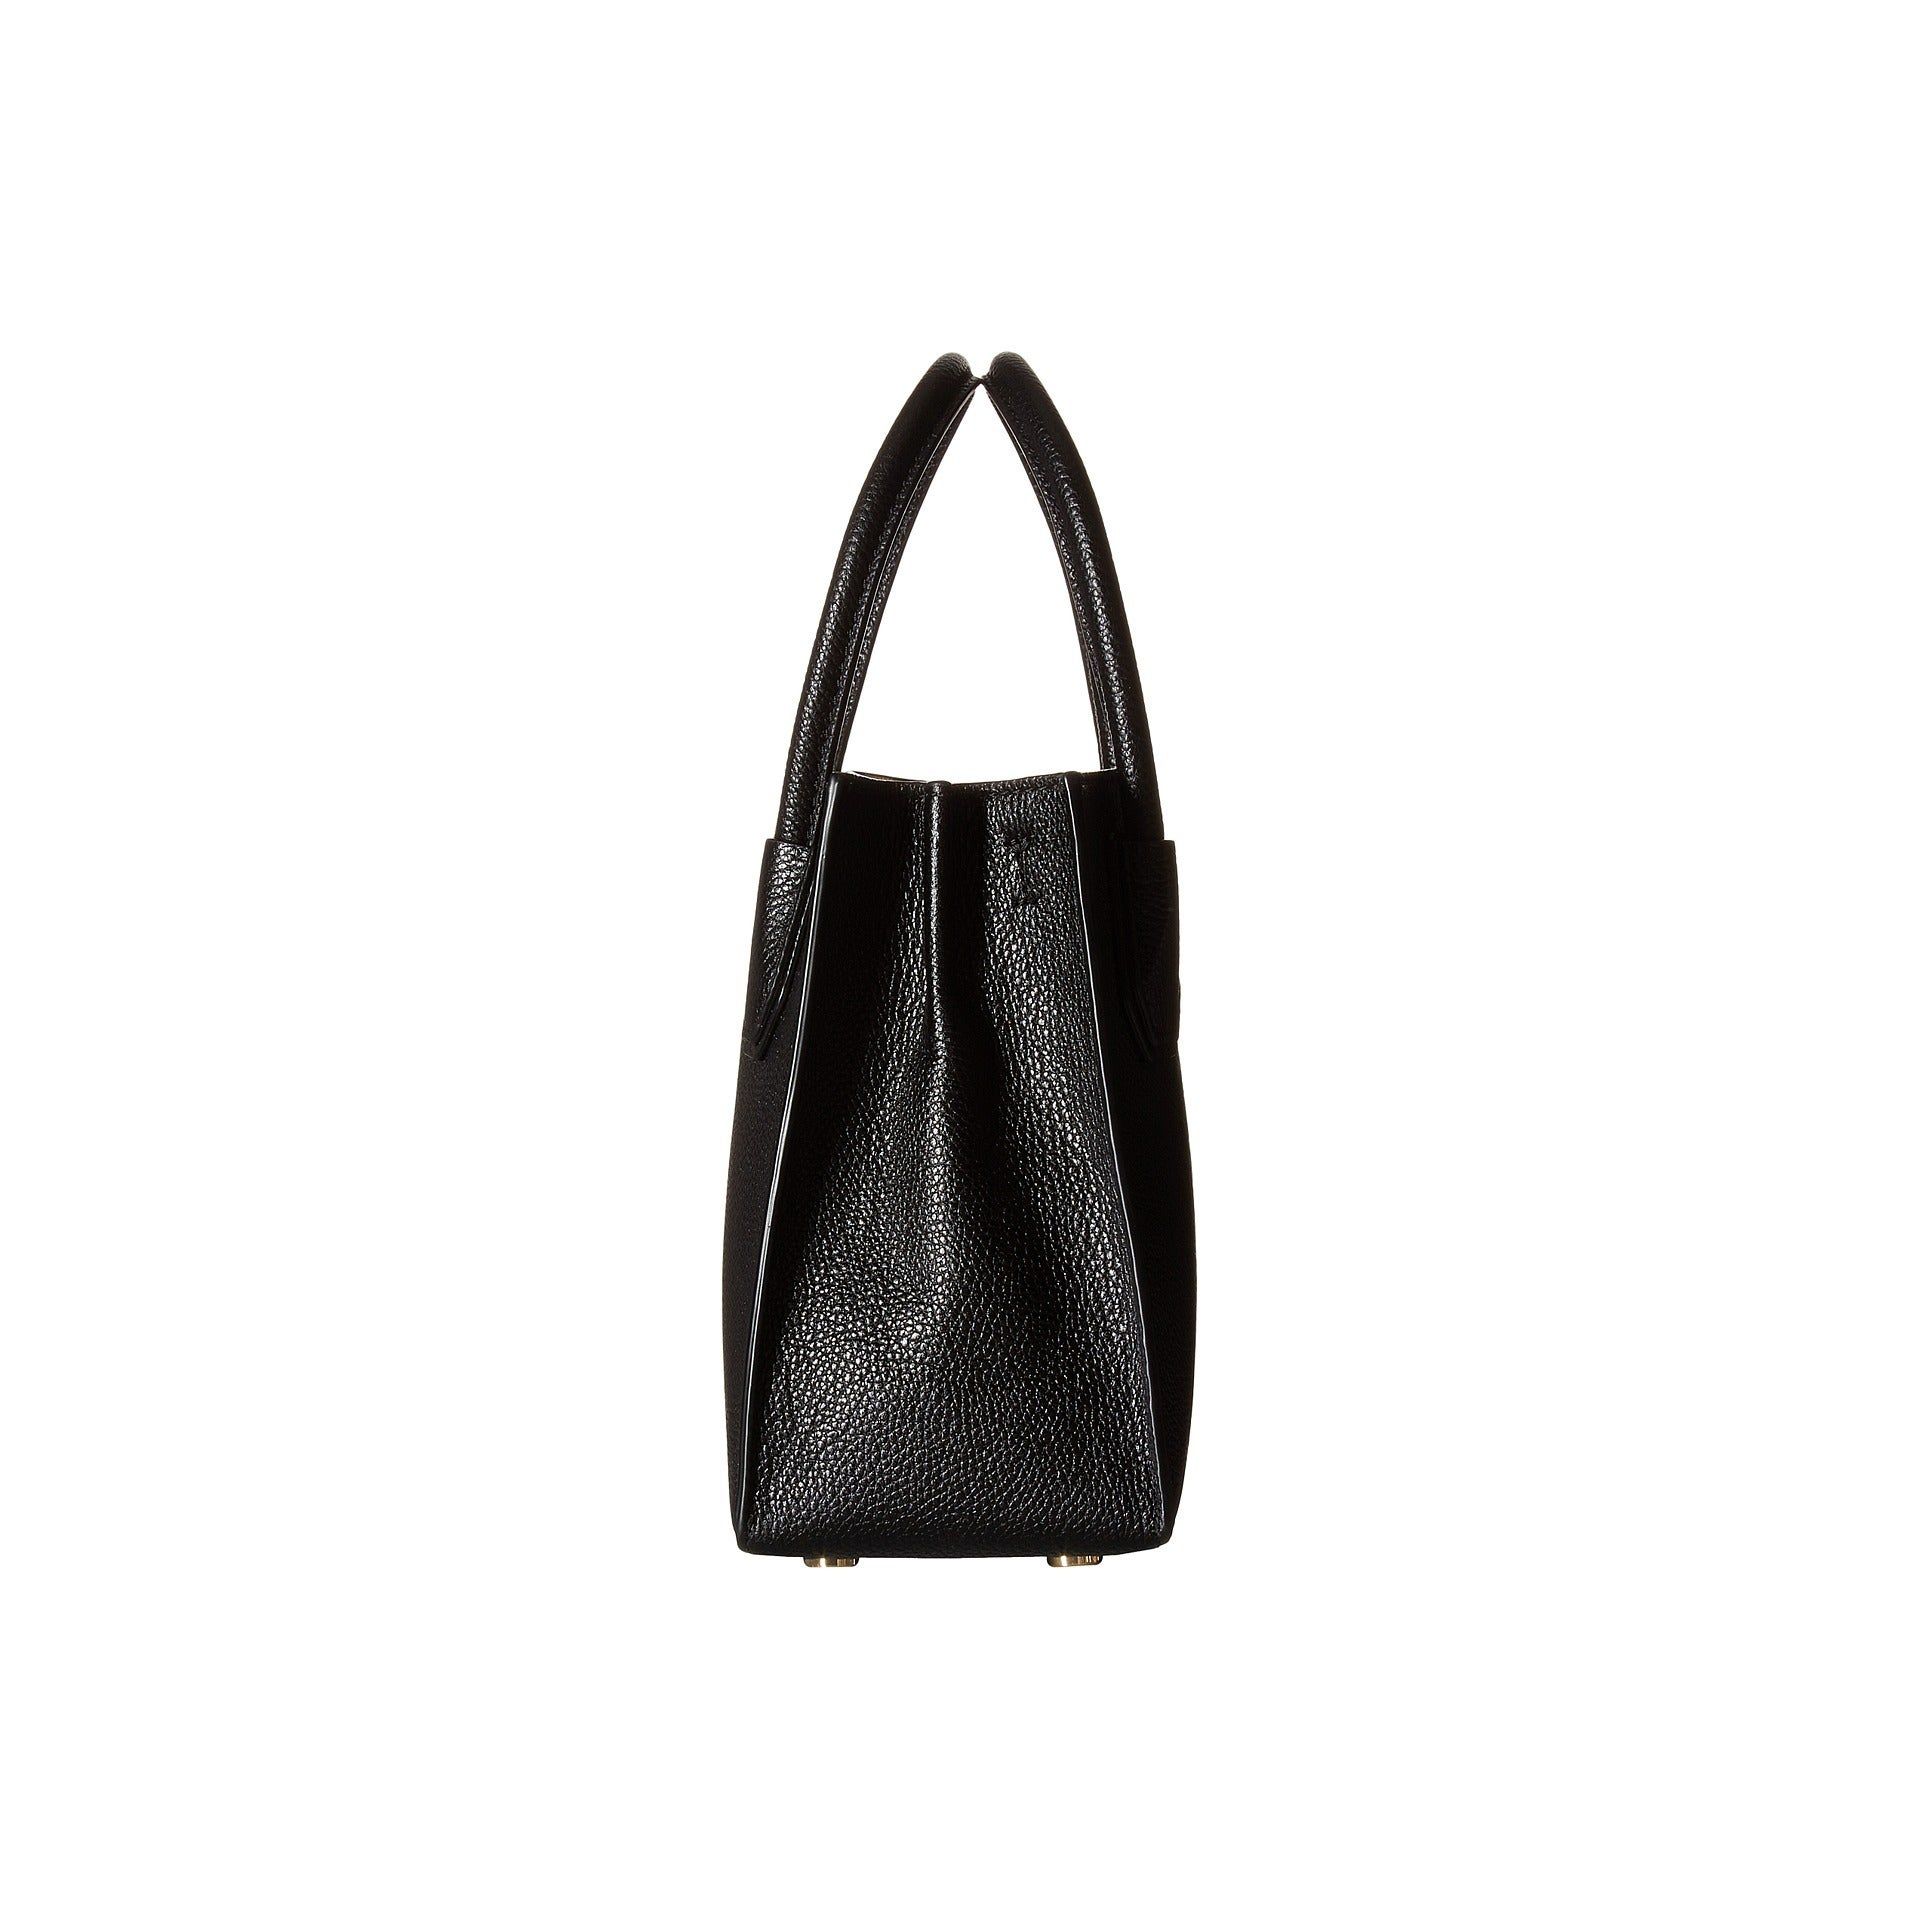 Michael Kors Handbag - Image 5 of 7